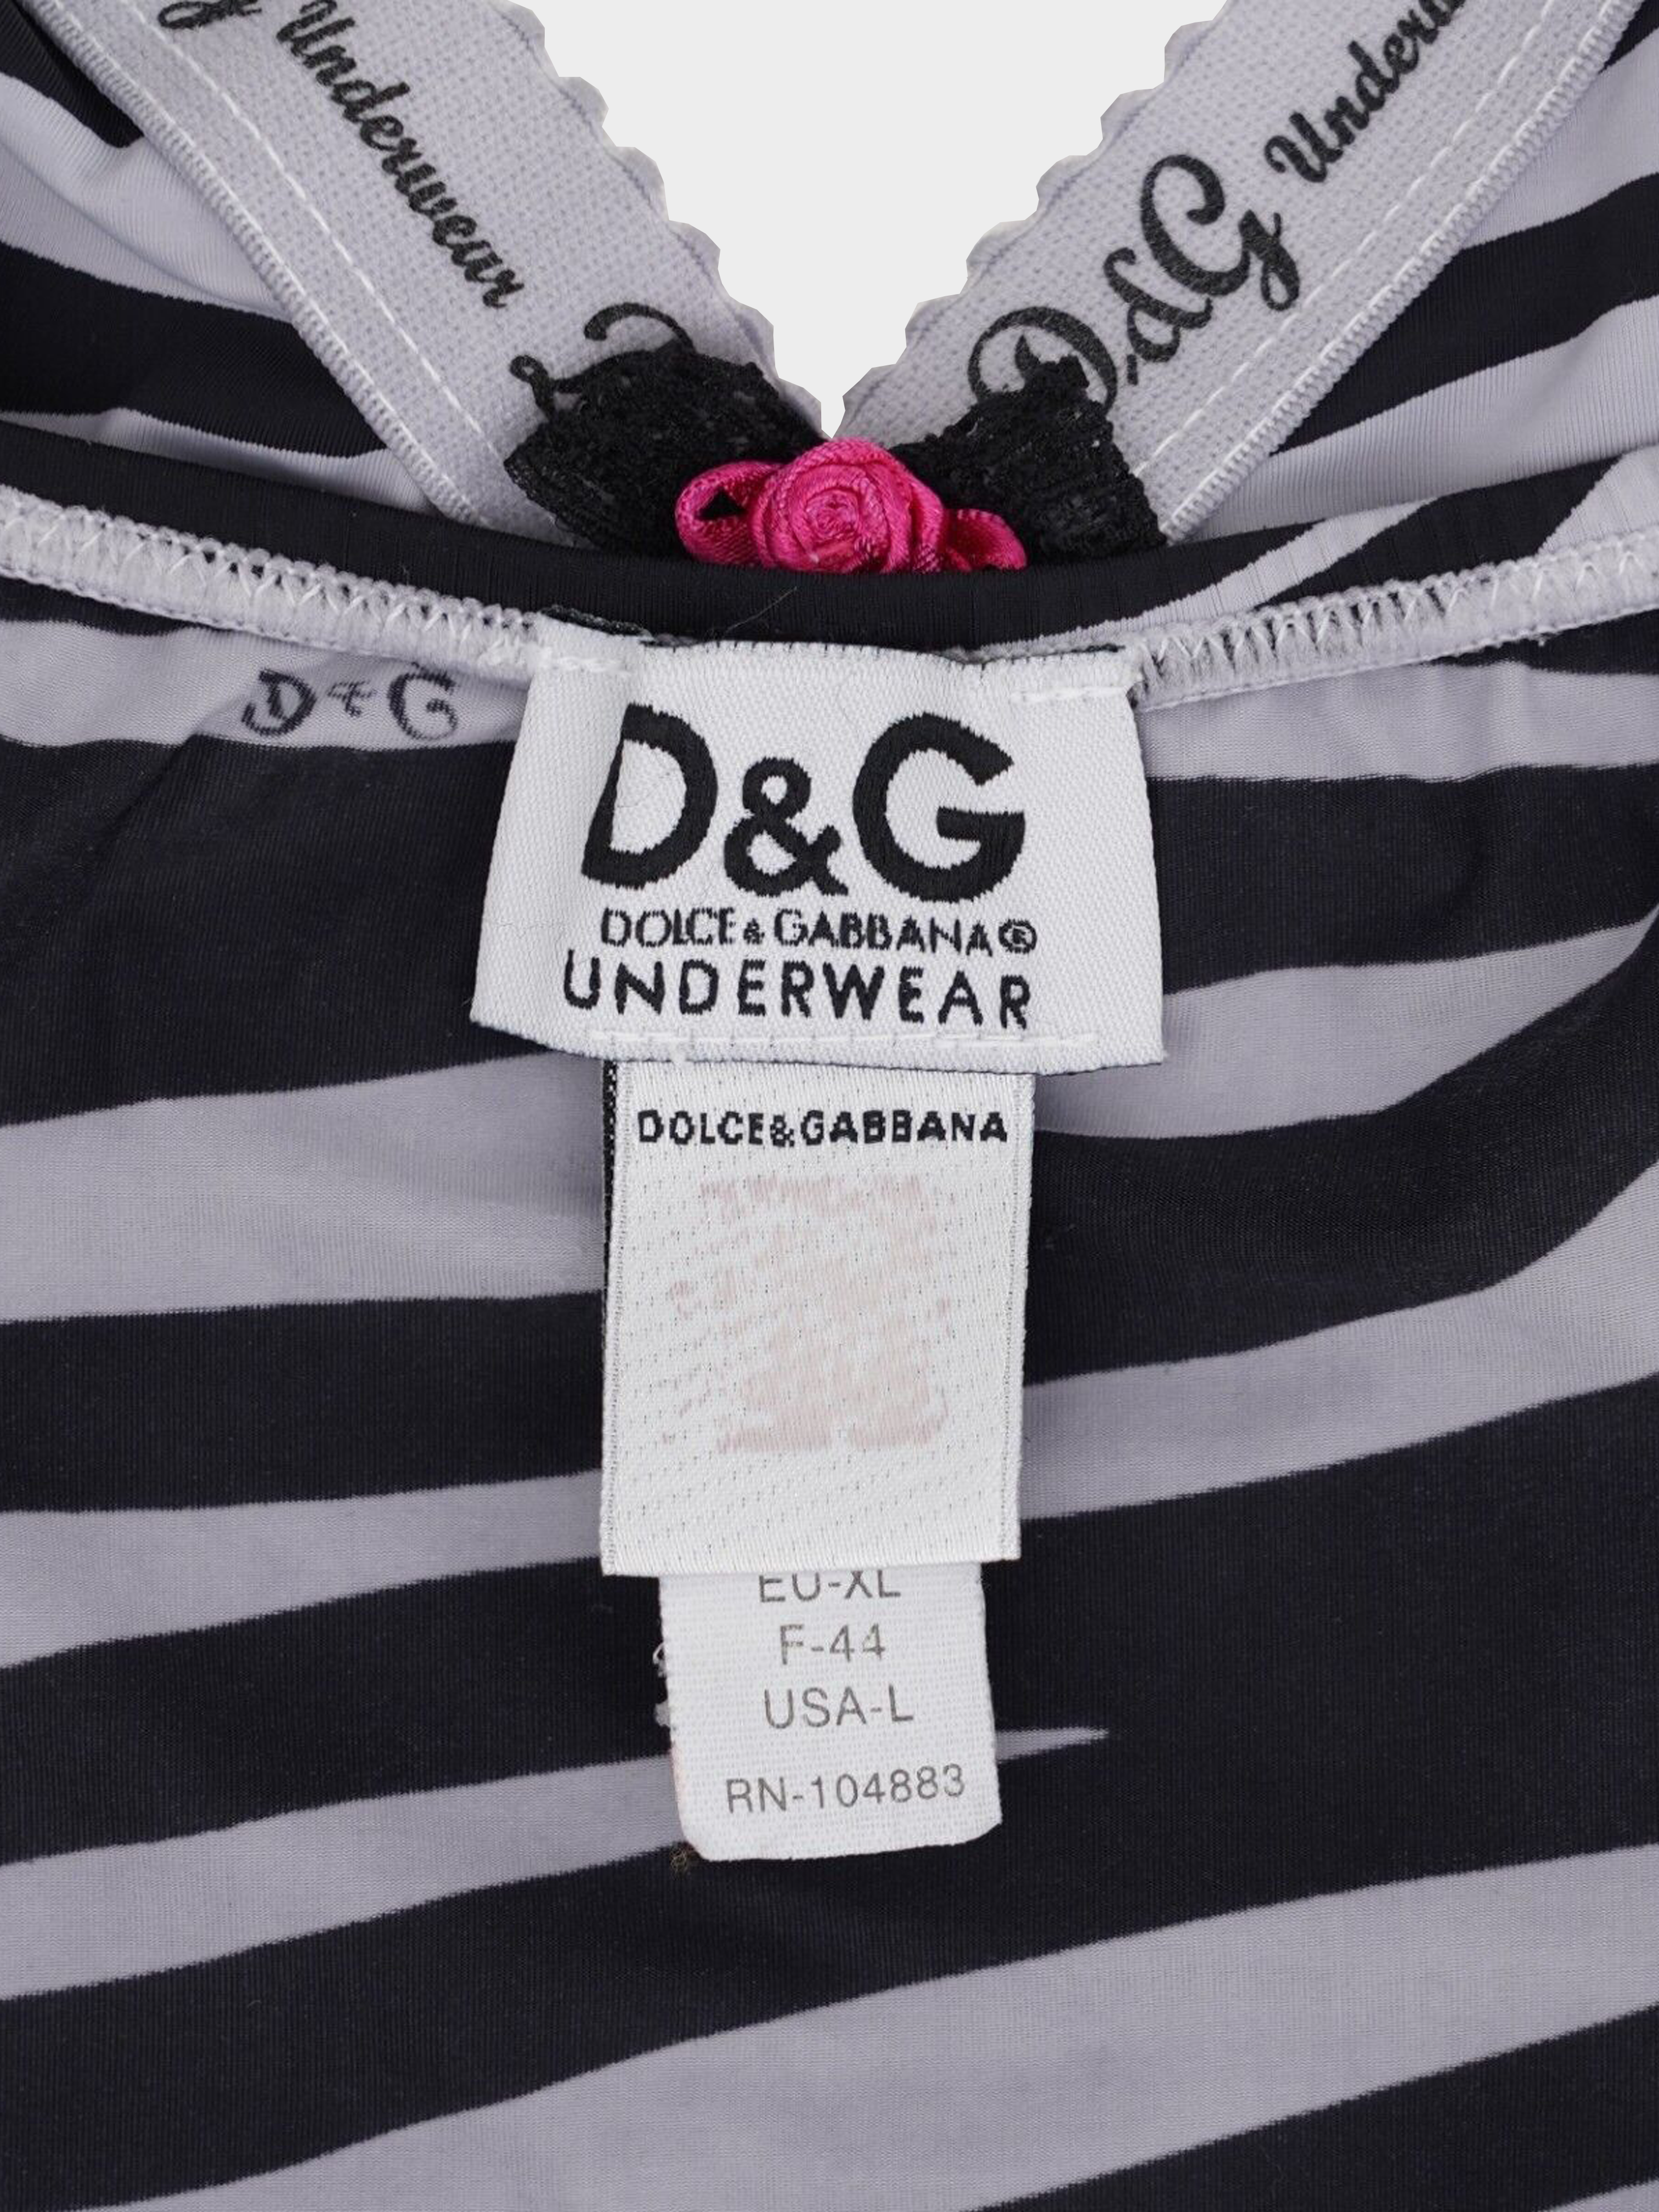 Dolce & Gabbana D&G 2000s Zebra Print Tank Top